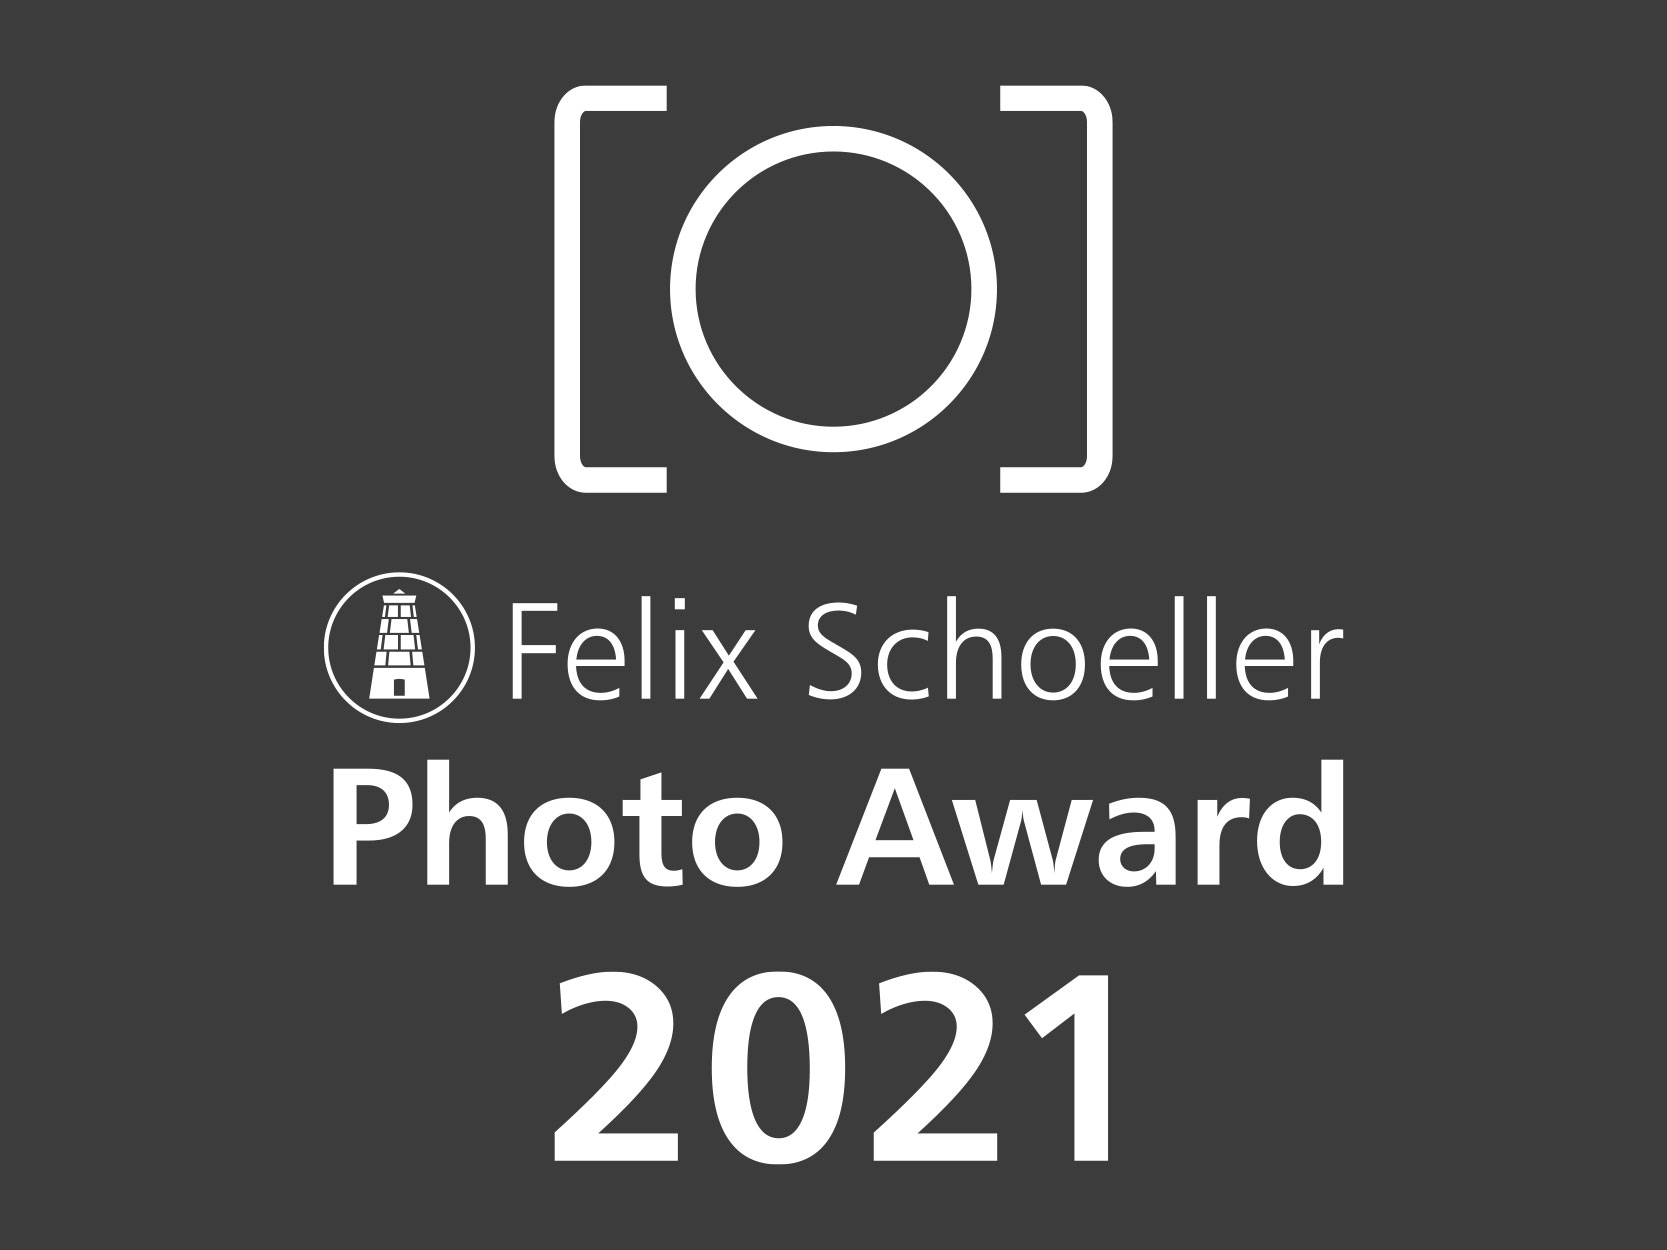 Der Felix Schoeller Photo Award 2021 startet am 1. Januar 2021